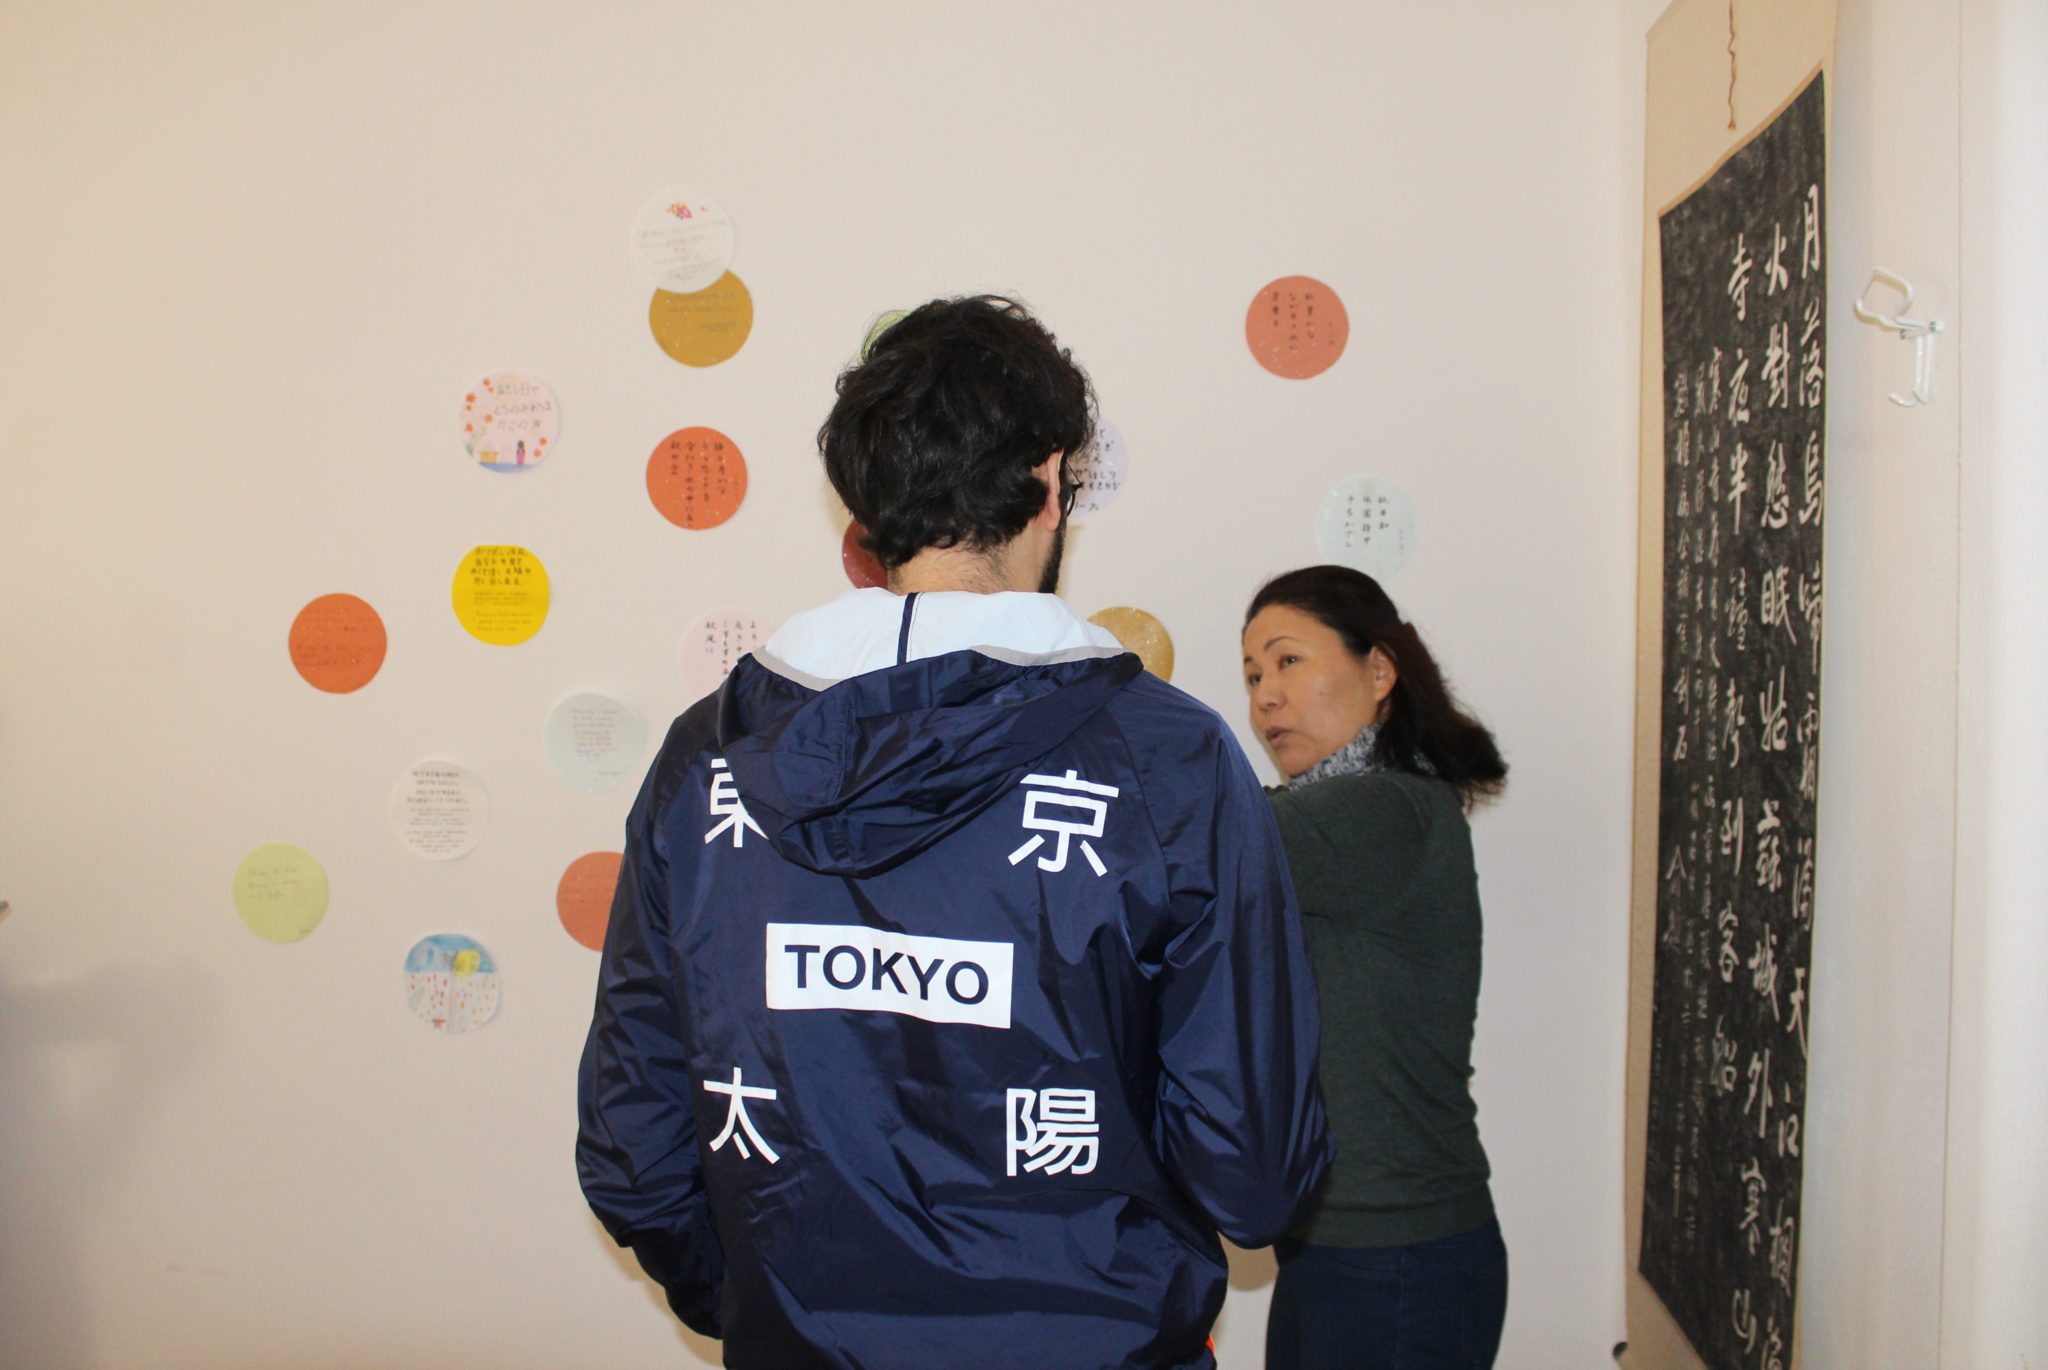 L'associazione Kokoro di Bergamo promuove la cultura giapponese organizzando corsi, incontri e percorsi nella città. Li abbiamo seguiti per un giorno